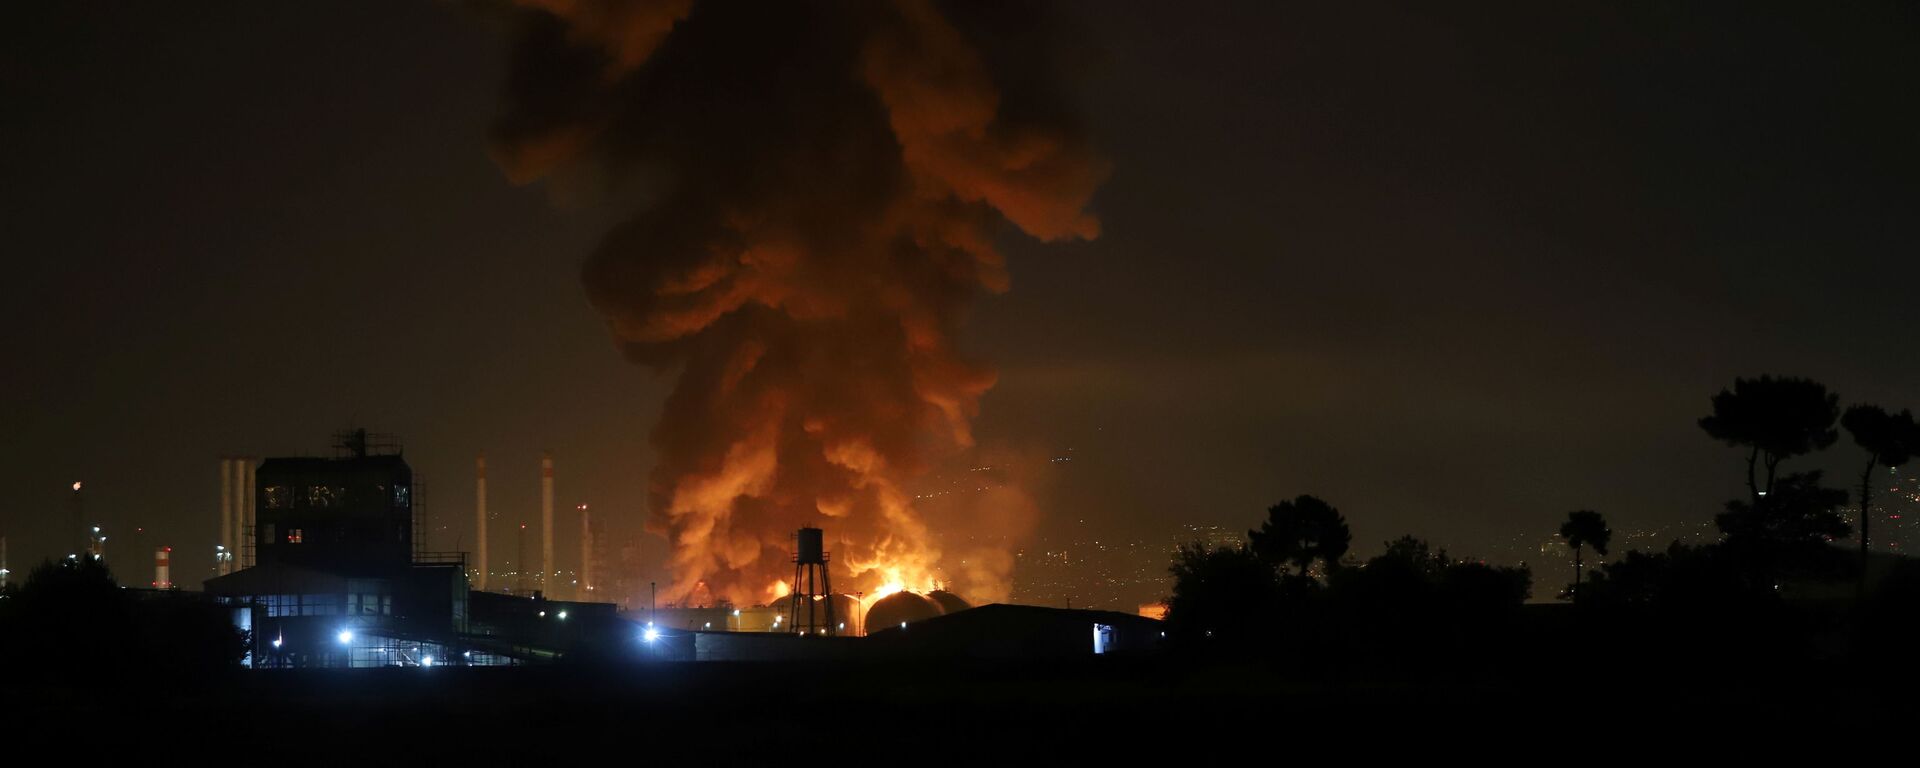 Дым от взрыва на нефтеперерабатывающем заводе в Тегеране - Sputnik Таджикистан, 1920, 24.07.2021